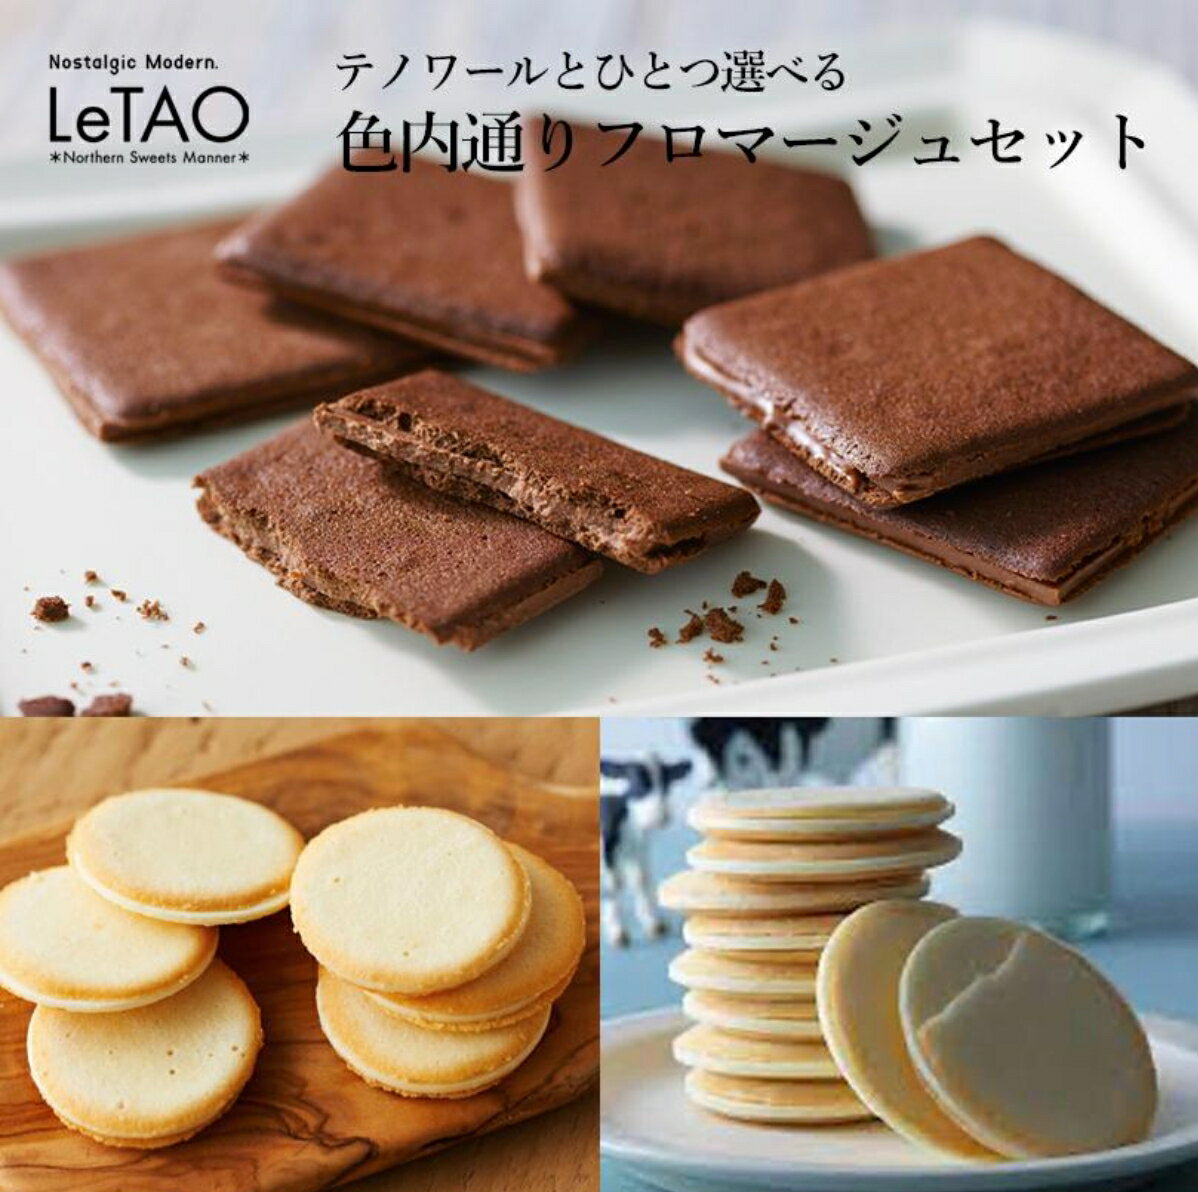 【預購】LeTAO 起司夾心 紅茶巧克力夾心餅乾 小樽洋菓子 貓舌餅乾 牛奶餅乾 北海道限定